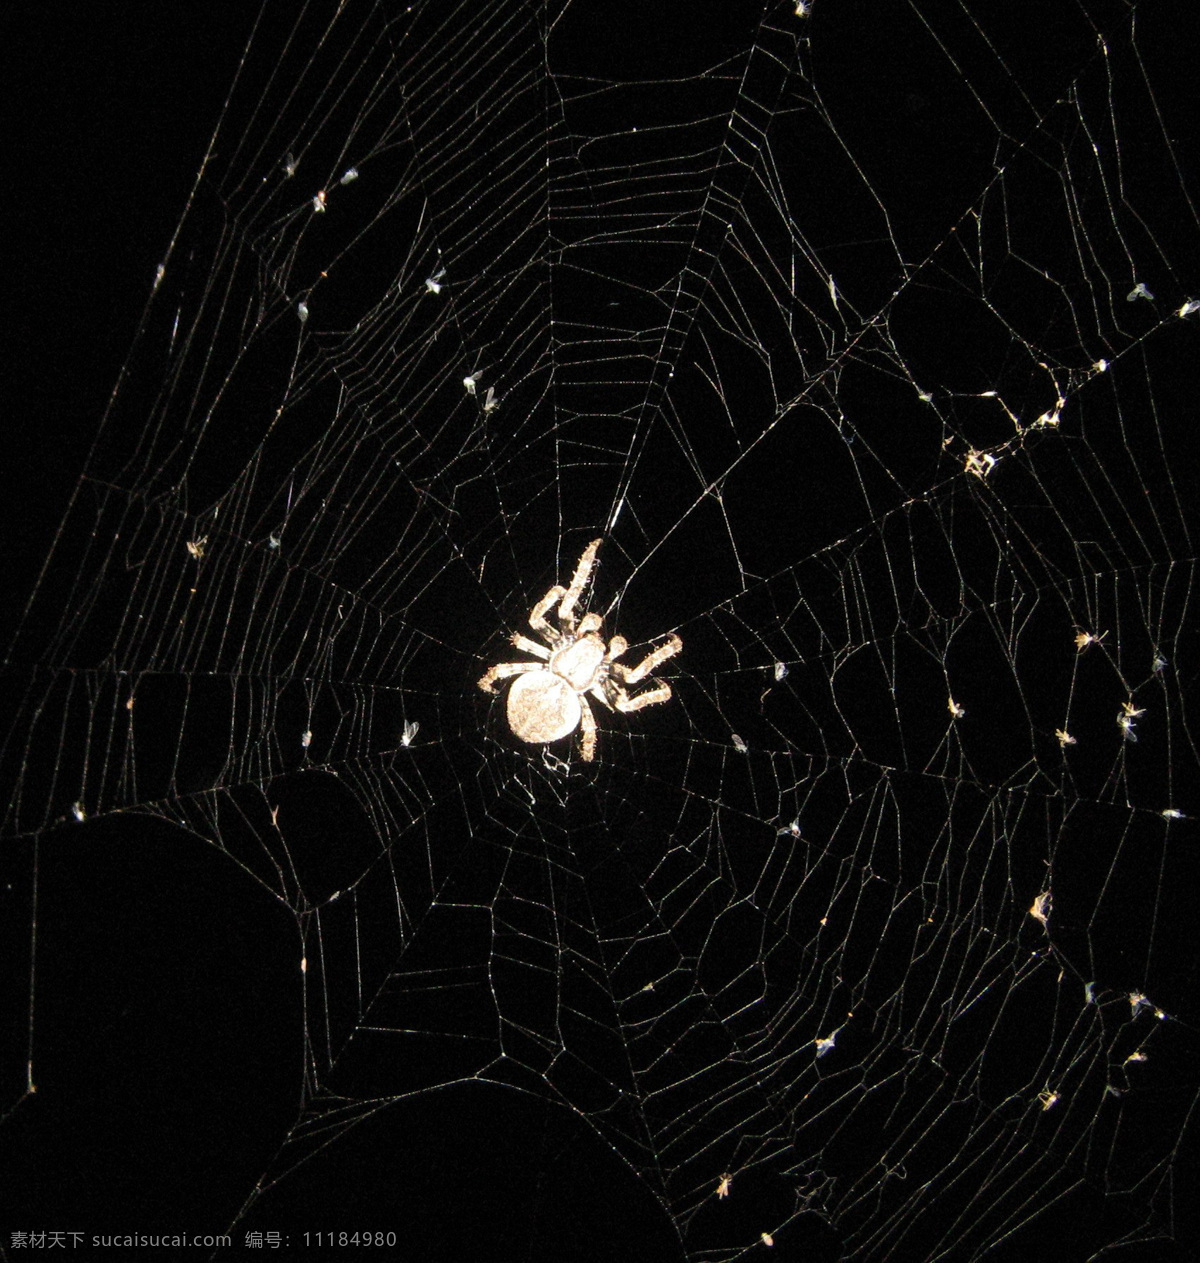 蜘蛛 蜘蛛网 黑色背景蜘蛛 生物世界 昆虫